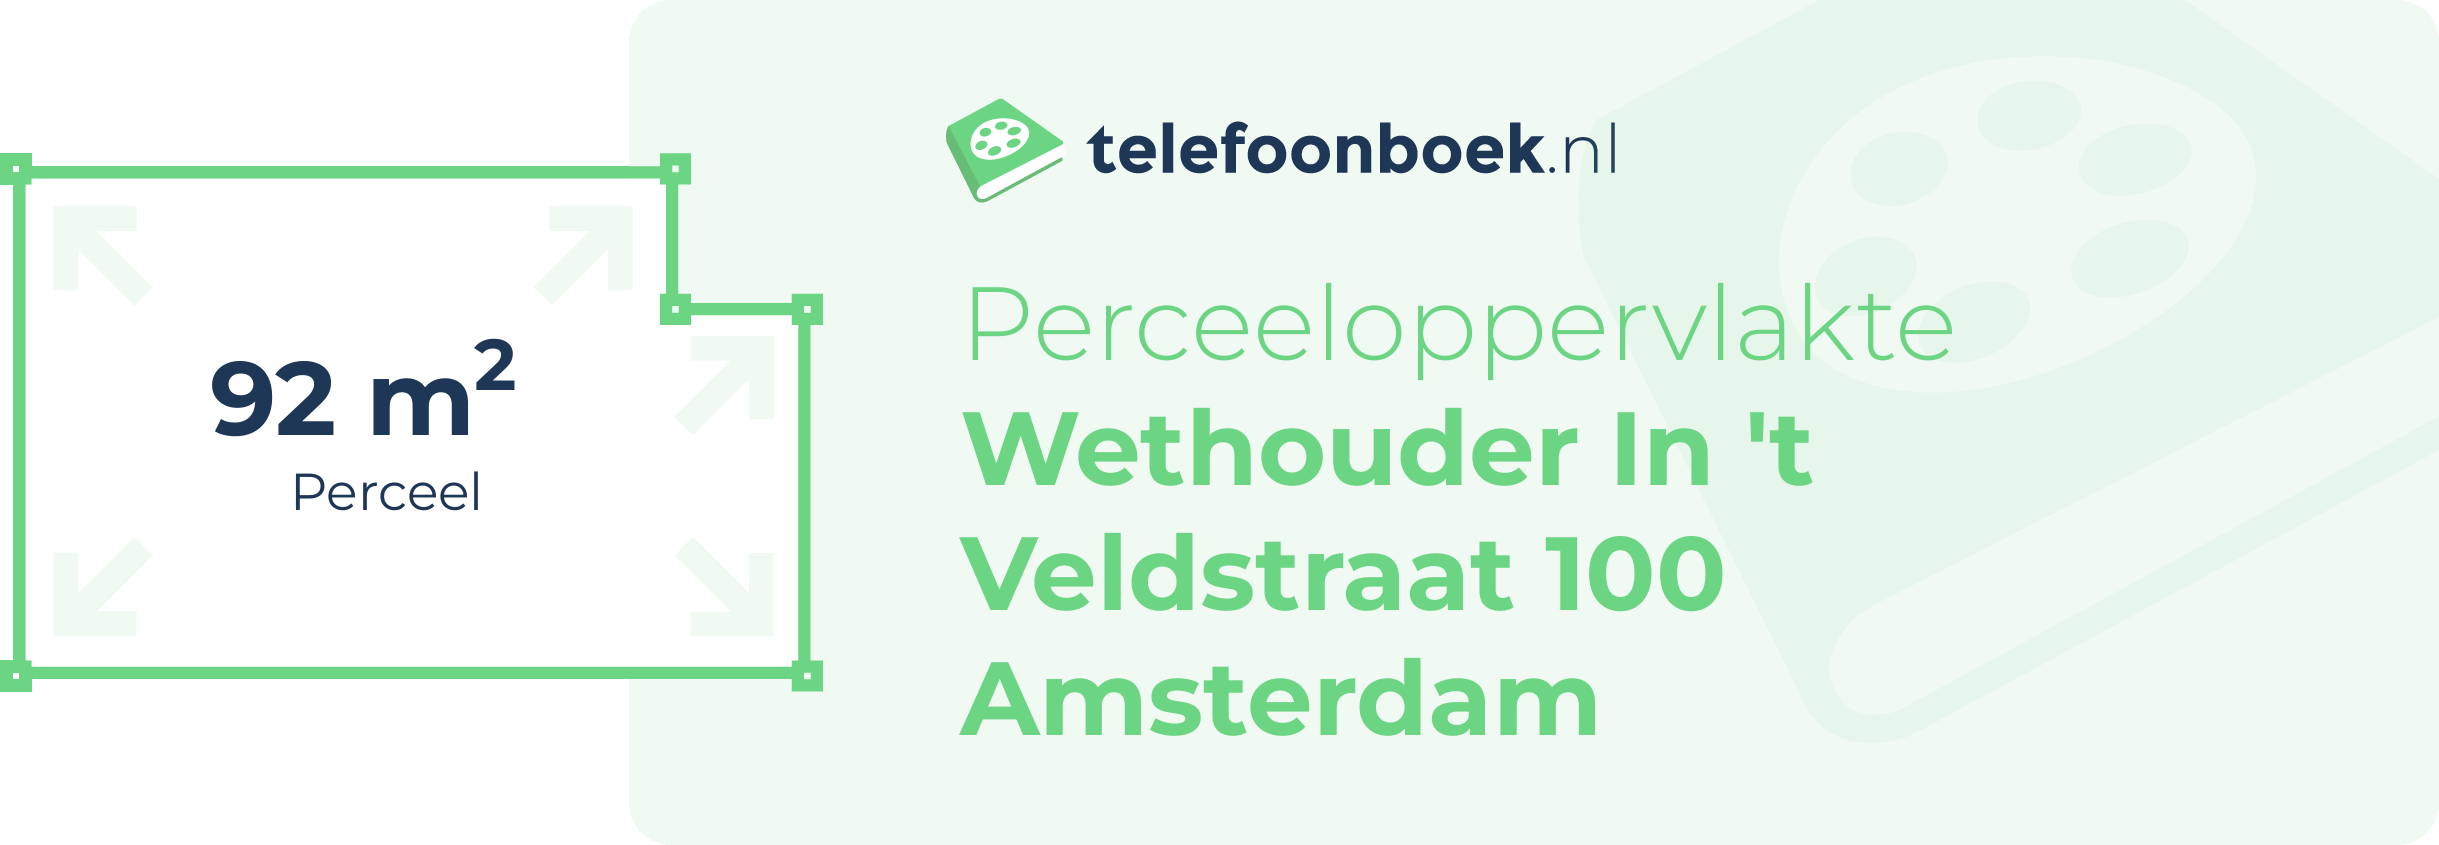 Perceeloppervlakte Wethouder In 't Veldstraat 100 Amsterdam